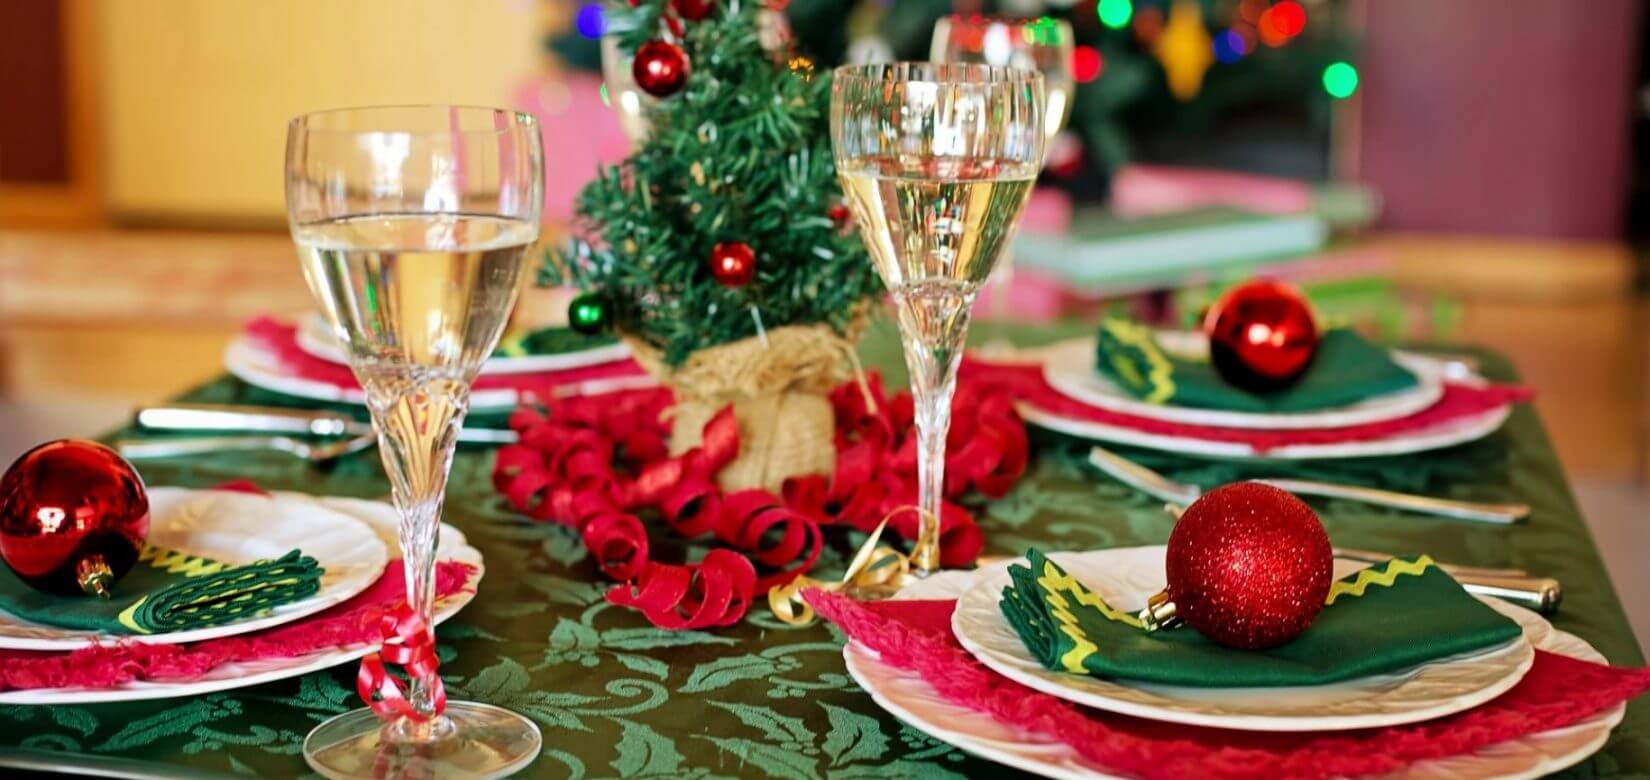 Σακχαρώδης Διαβήτης: Το χριστουγεννιάτικο τραπέζι και τι πρέπει να προσέξουμε κατά την εορταστική περίοδο